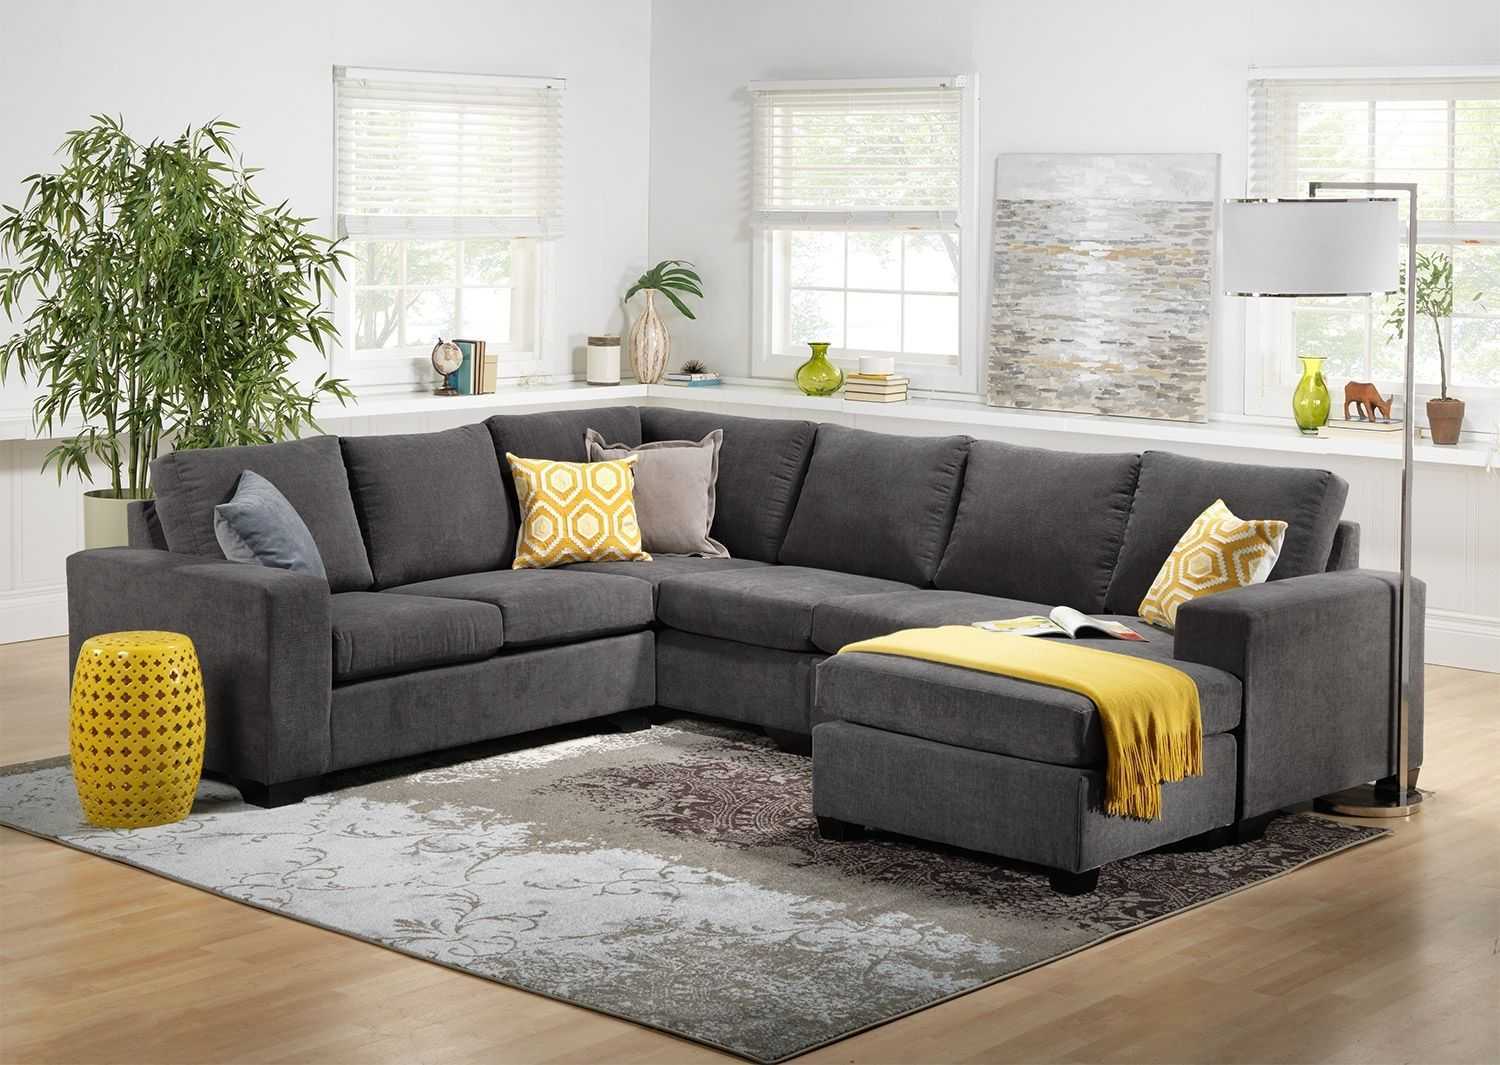 Как выбрать удобный и качественный диван, на что обращать внимание